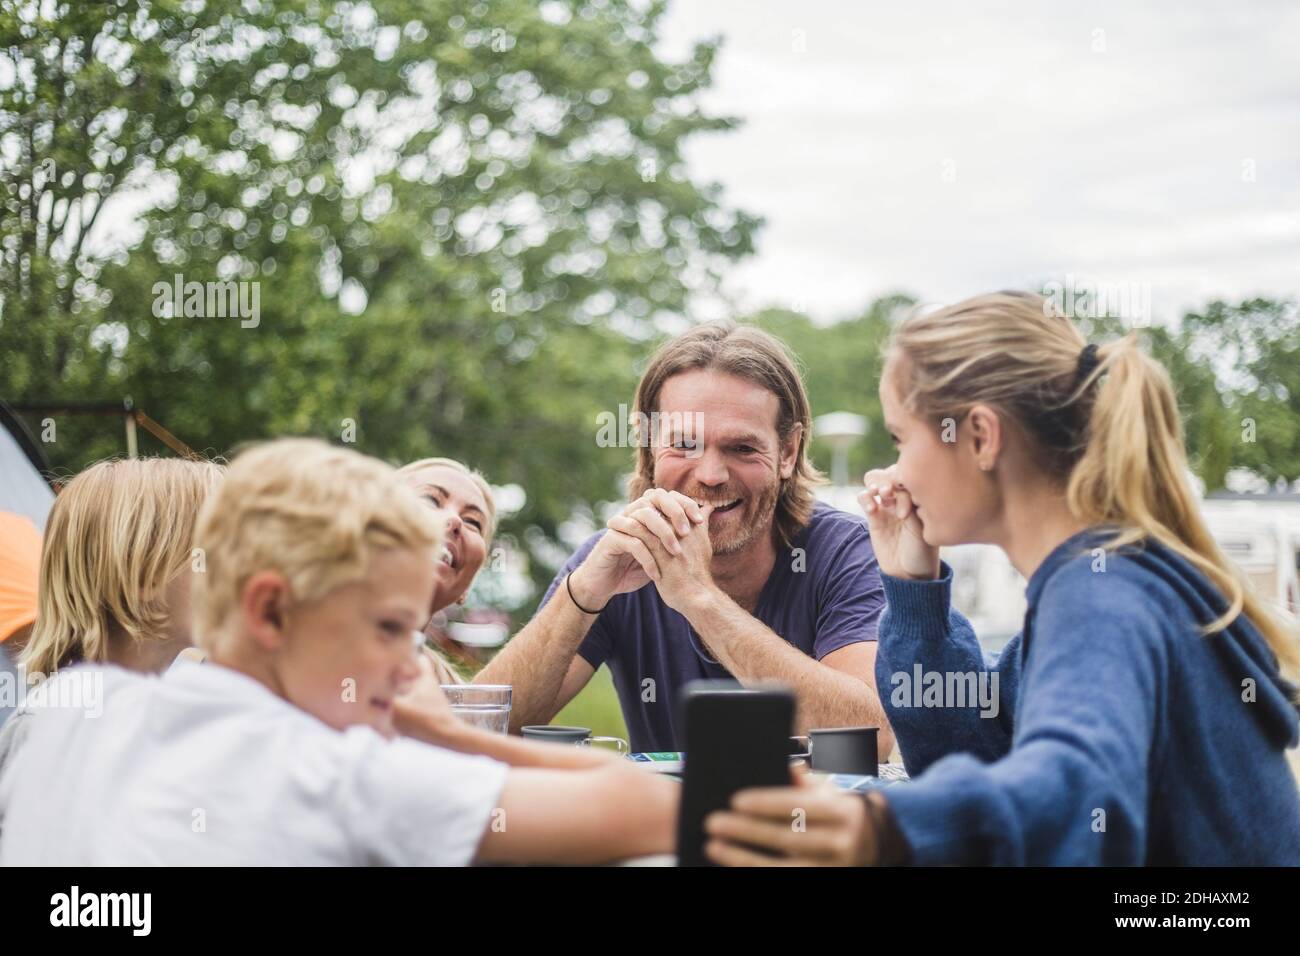 Adolescente tomando selfie con la familia en la mesa en el camping sitio Foto de stock